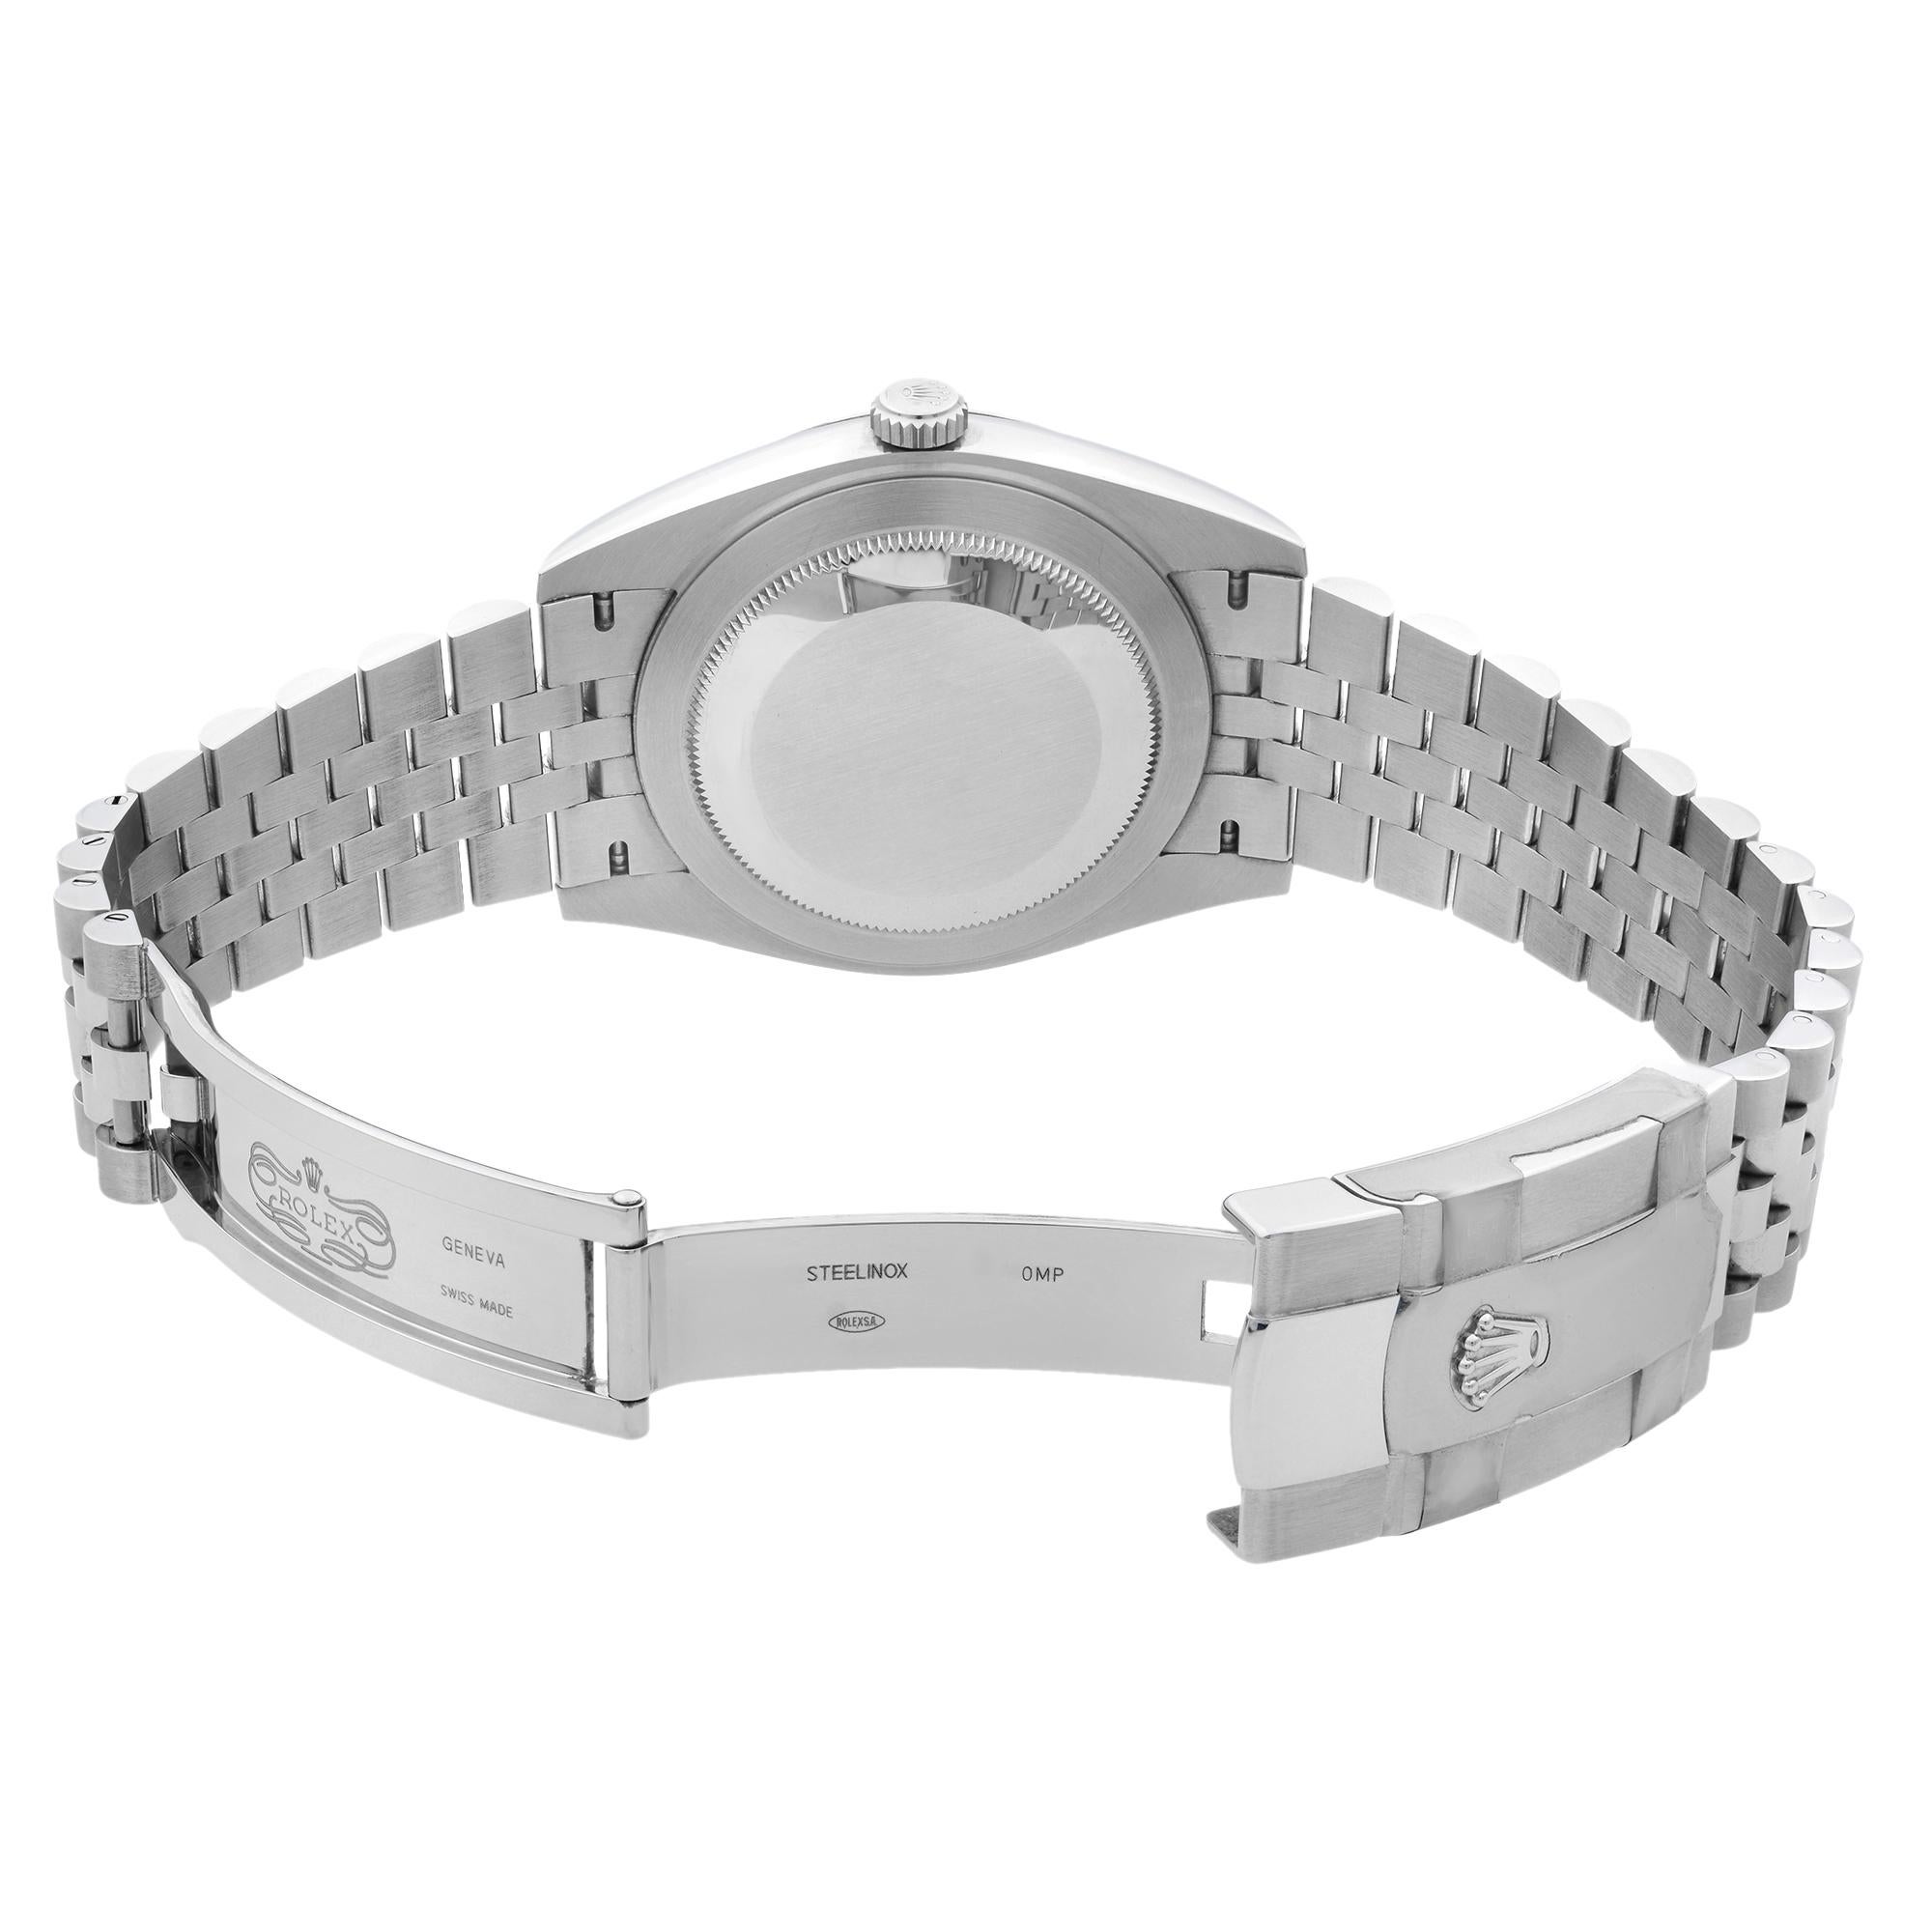 Rolex Datejust Jubilee Steel White Roman Dial Automatic Men's Watch 126334 2